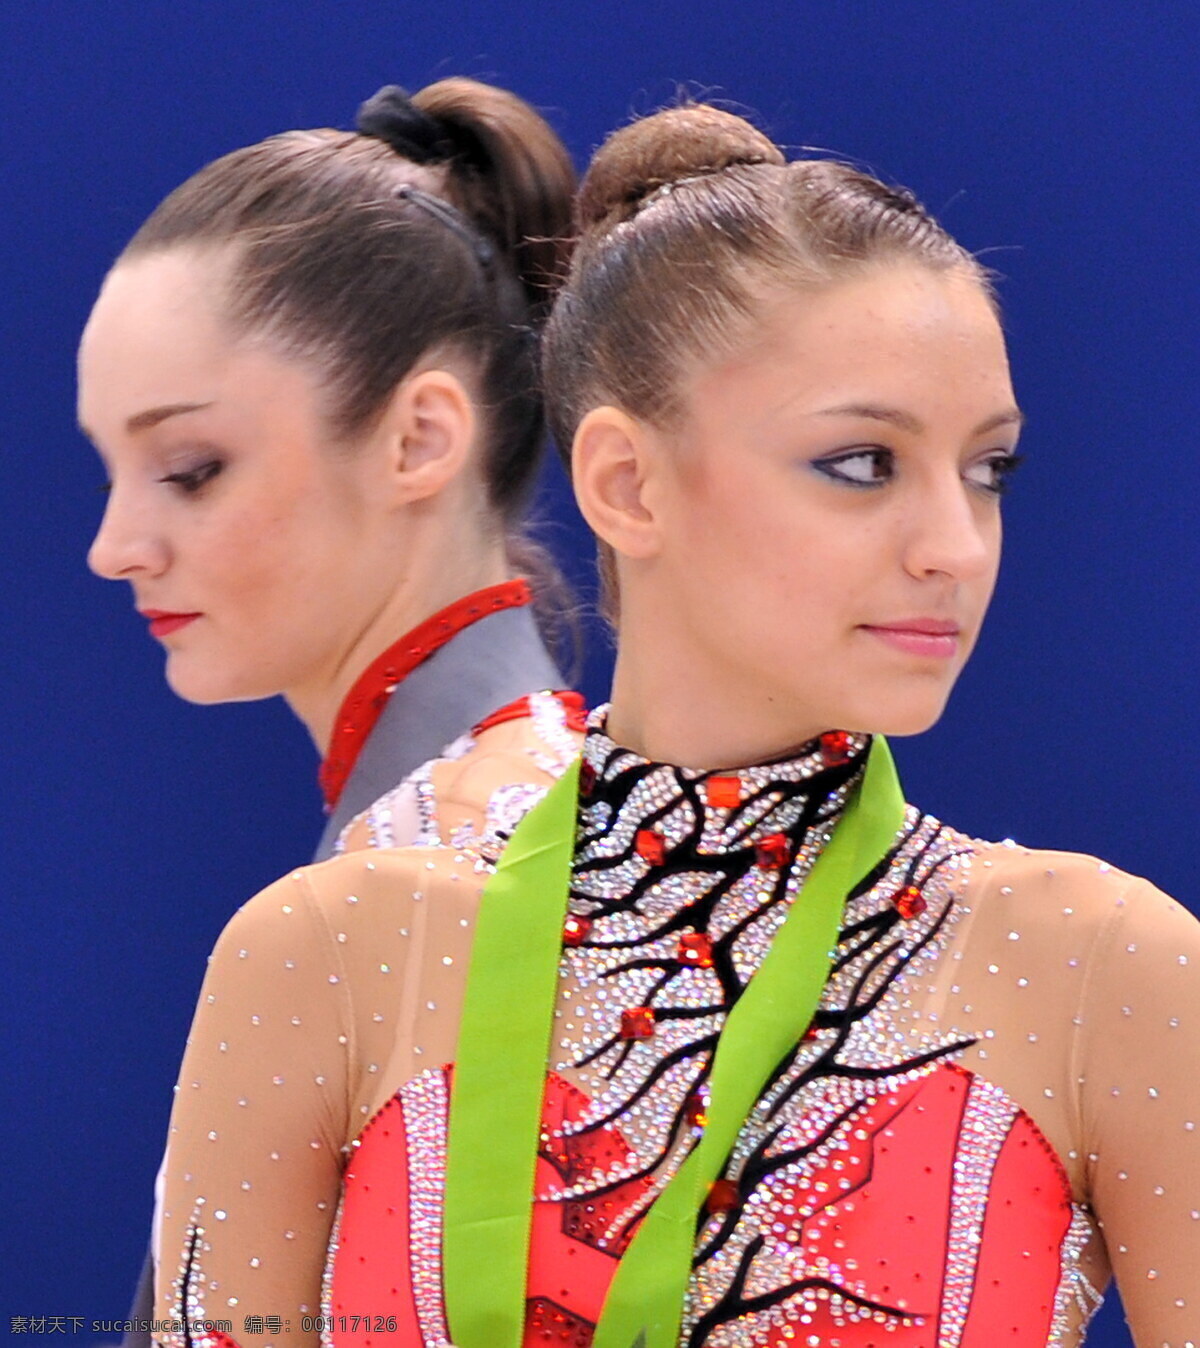 2009 年 艺术 体操 世锦赛 艺术体操 卡纳耶娃 安娜贝索诺娃 日本 体育明星 职业人物 人物图库